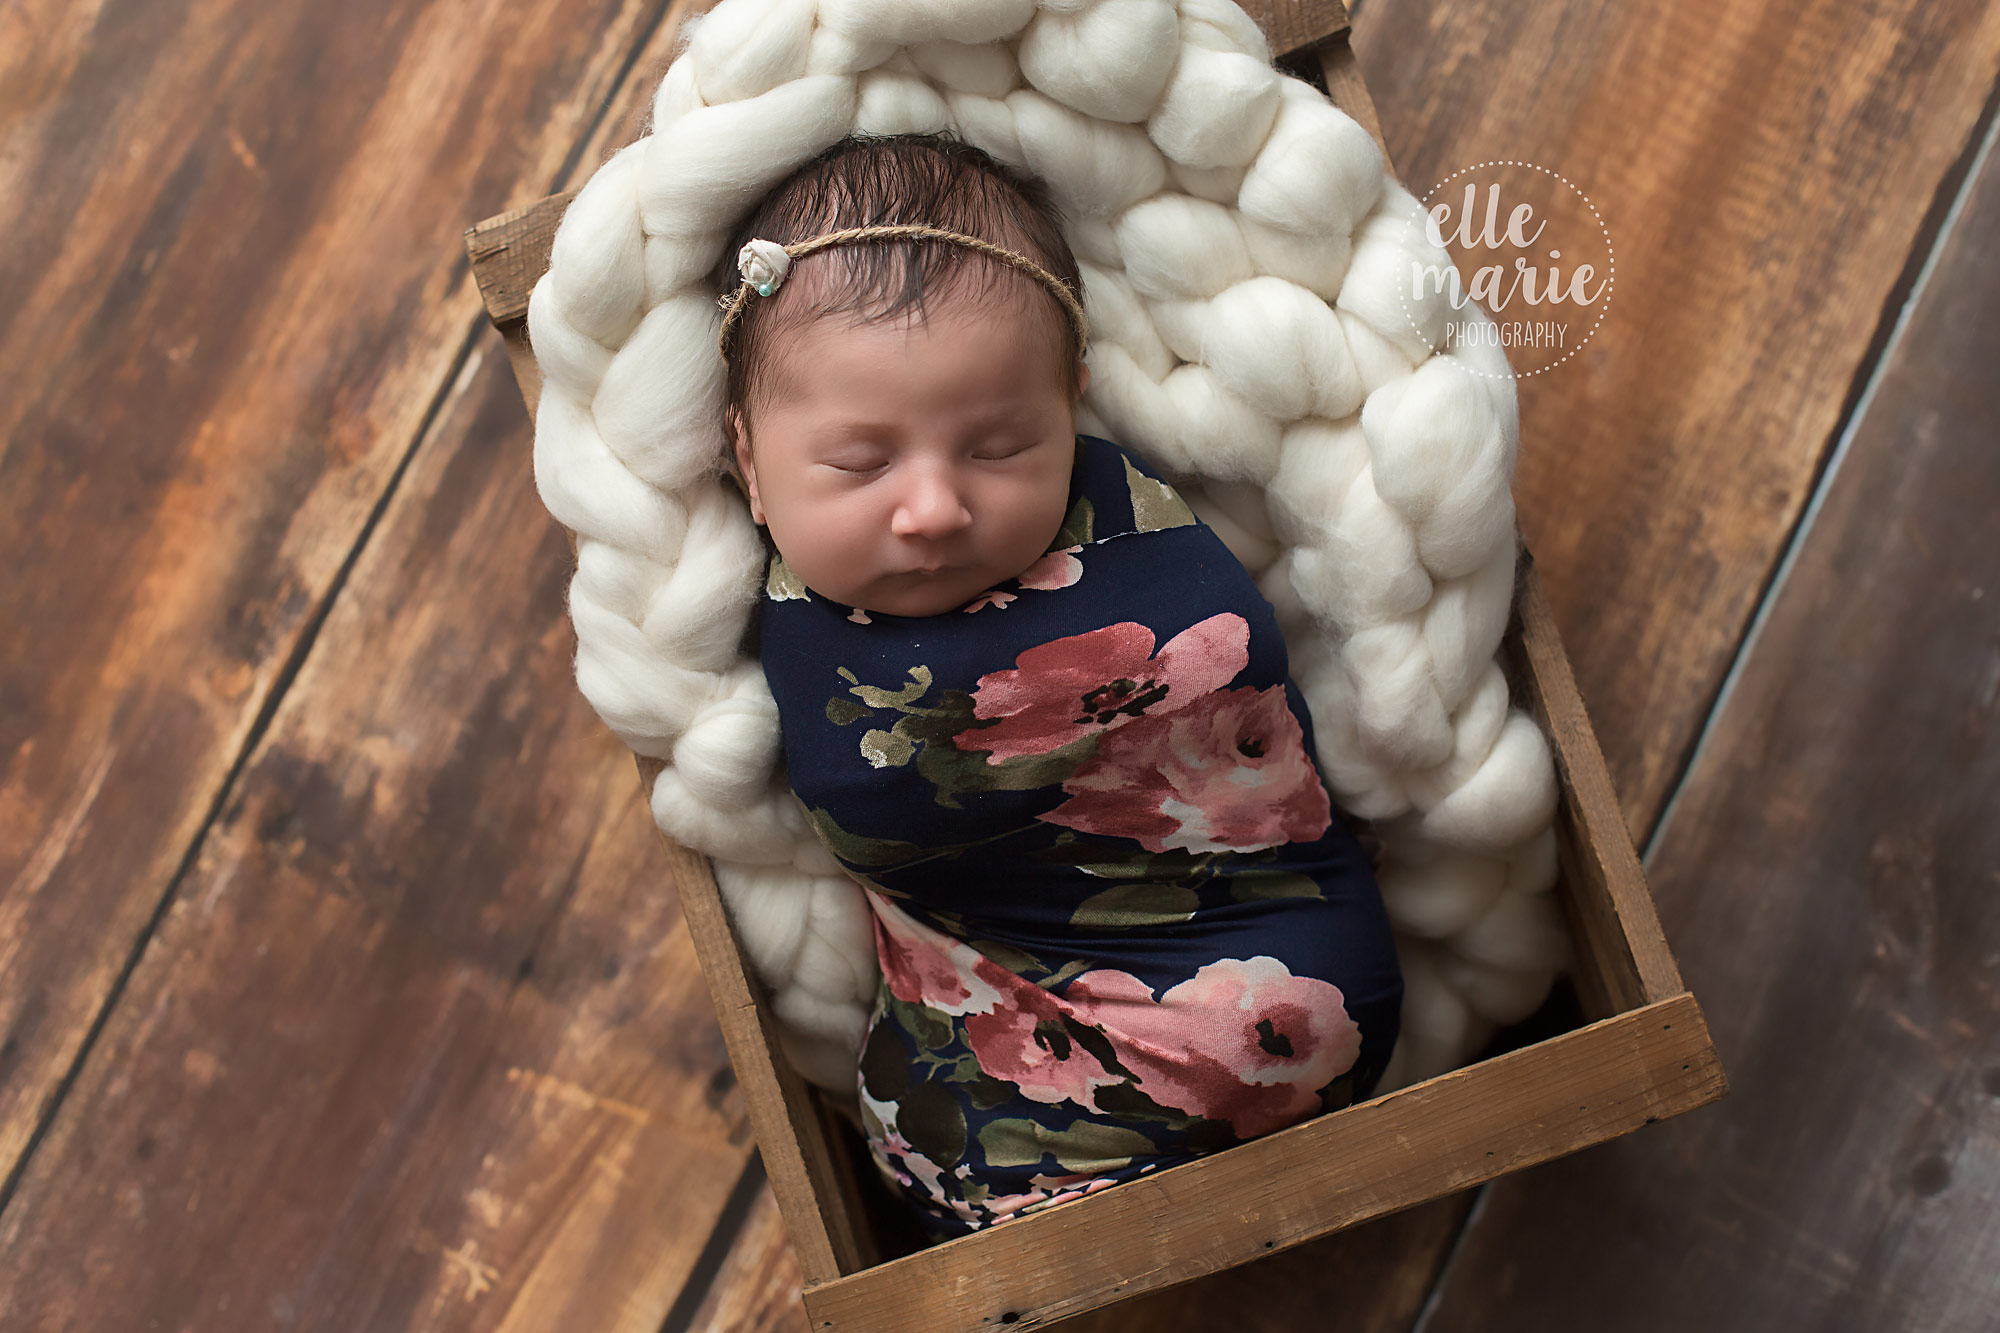 newborn in floral wrap in a brown crate